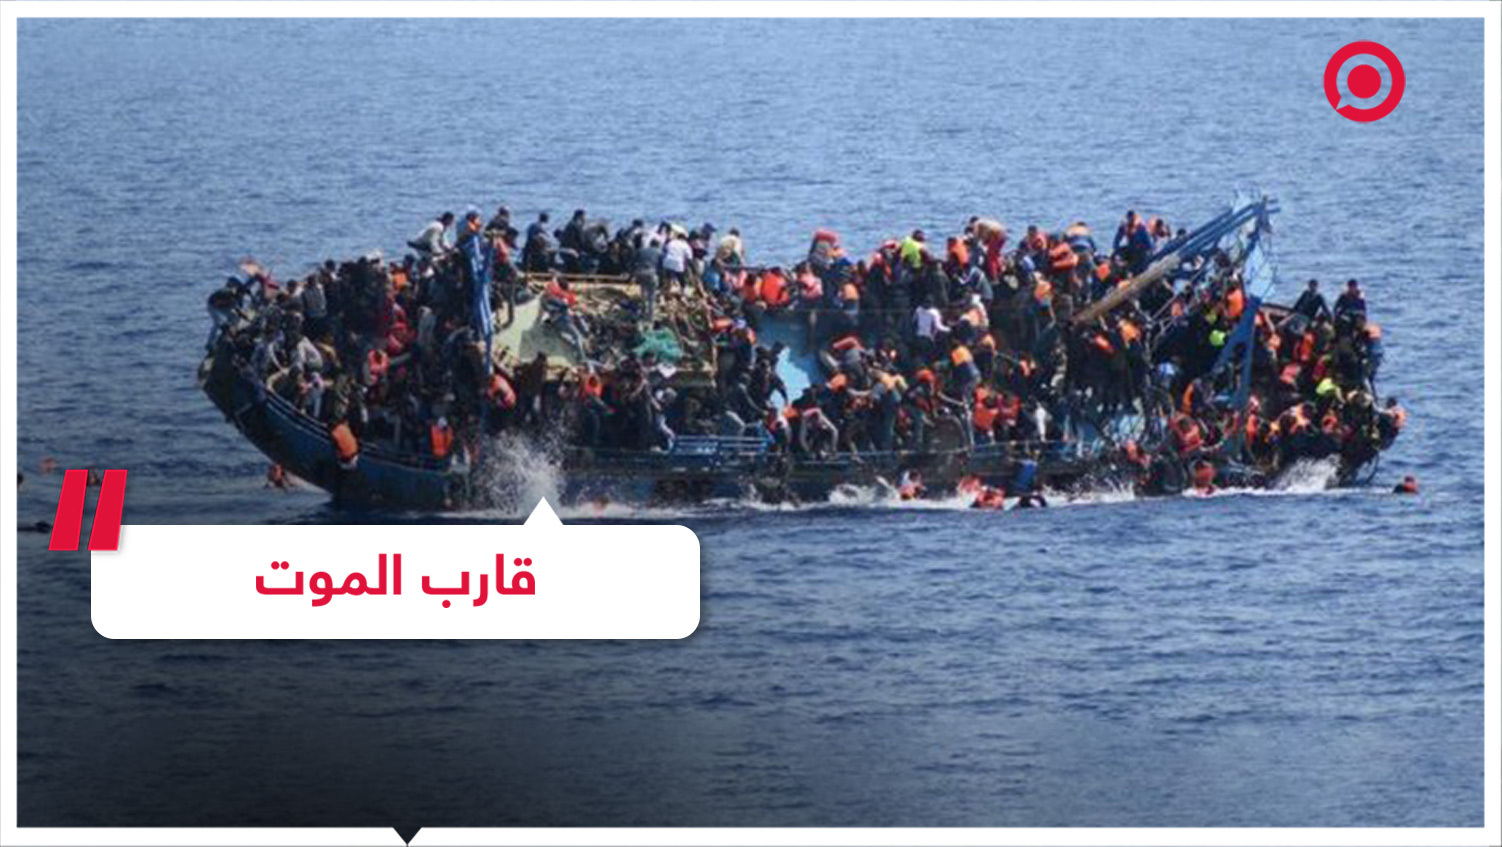 مأساة غرق قارب المهاجرين قبالة طرطوس تتفاقم